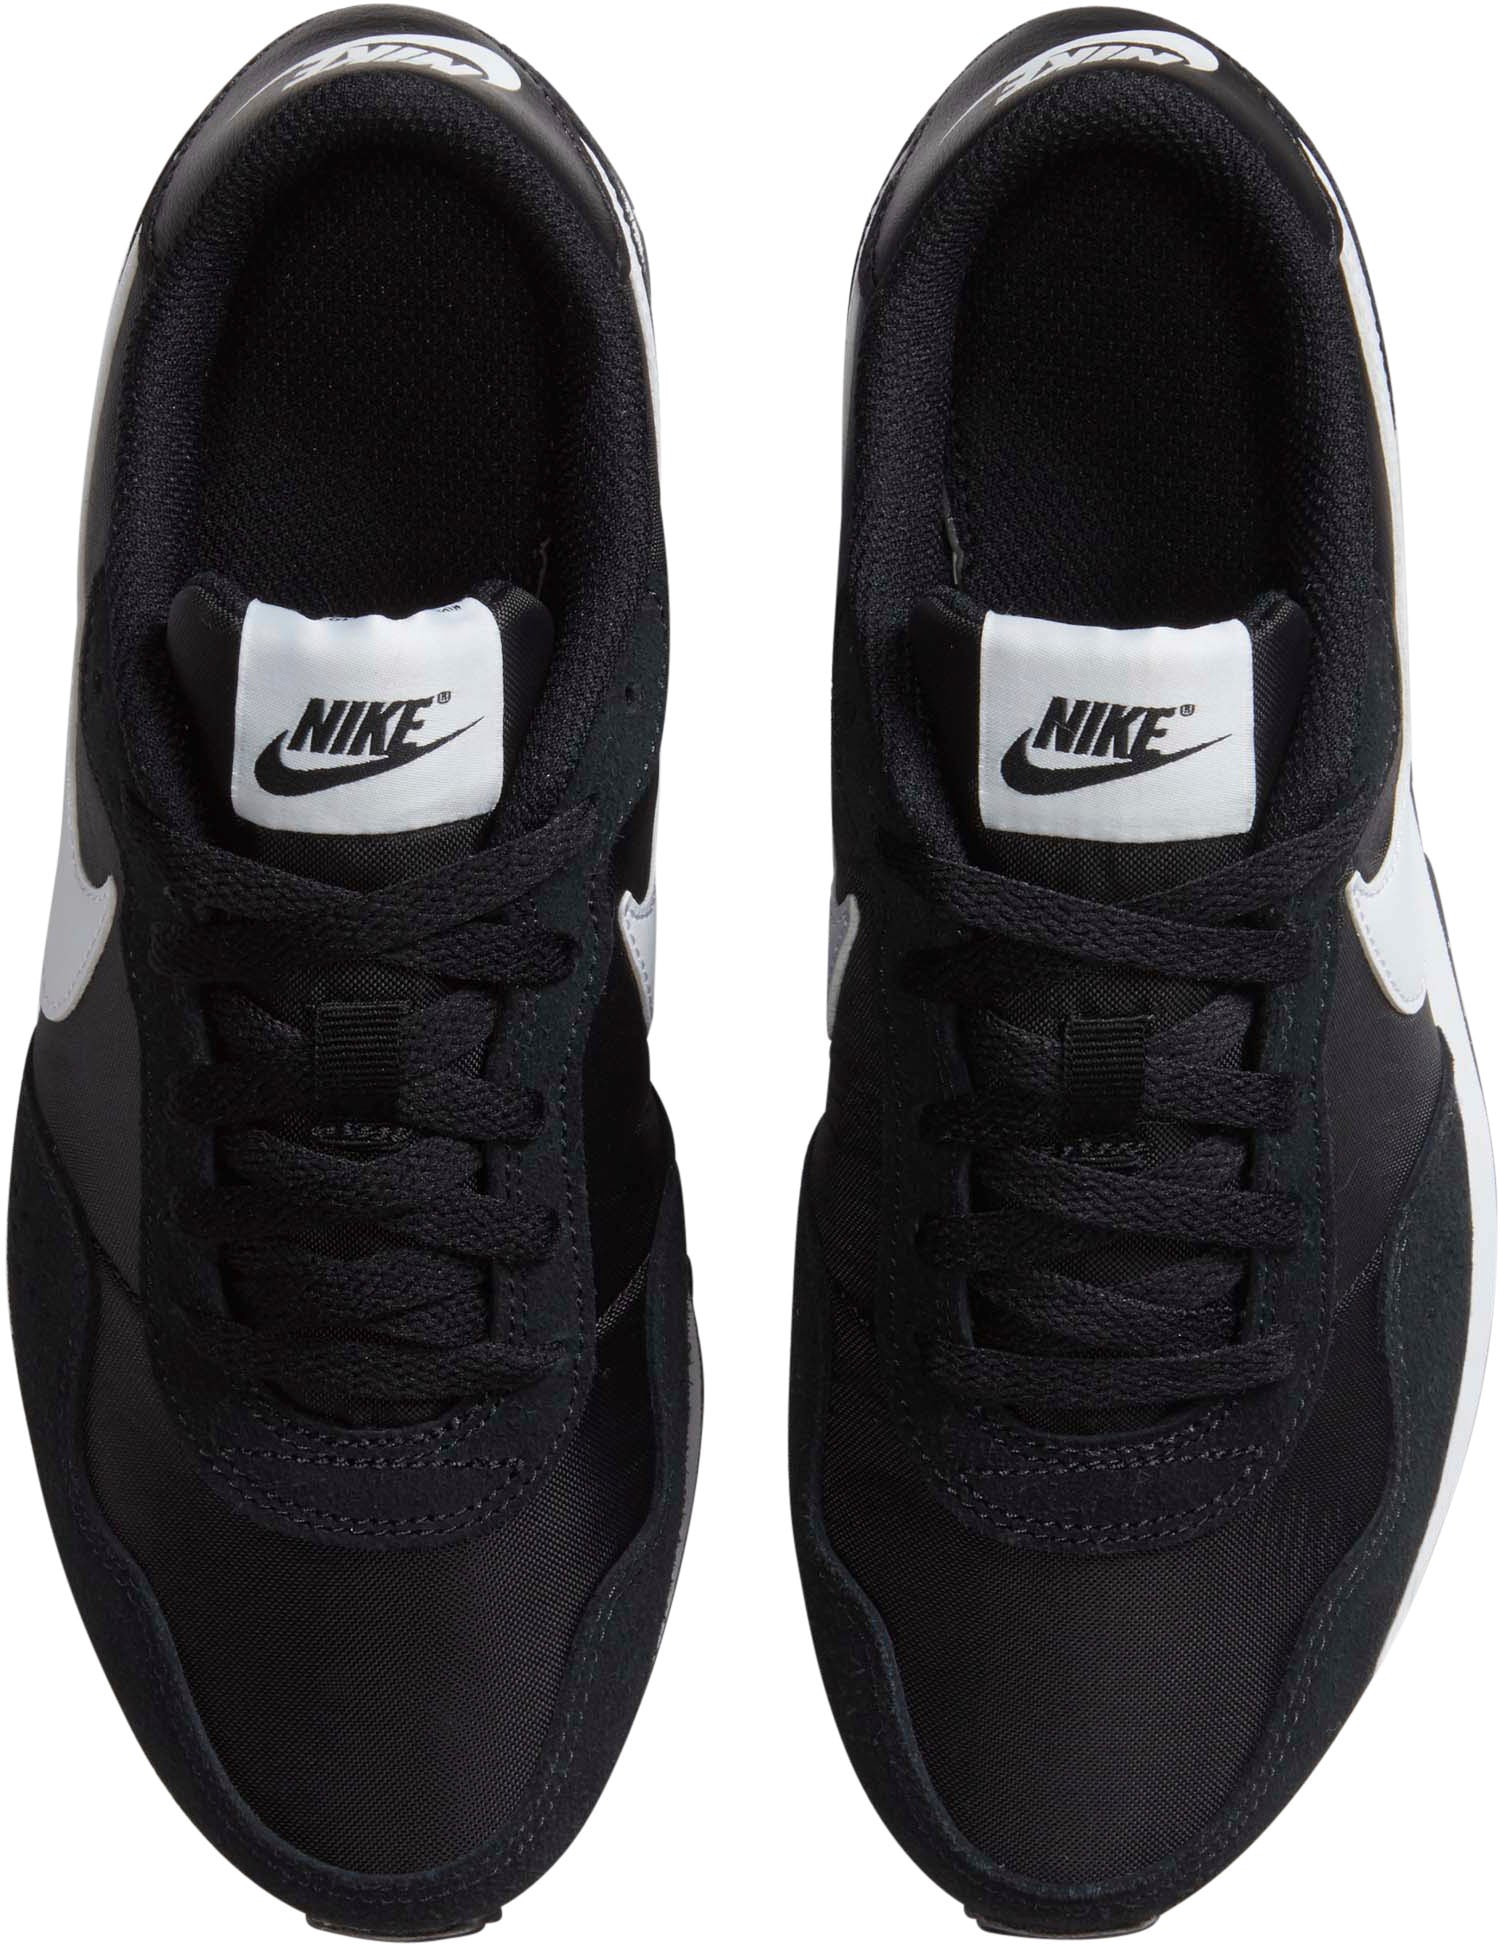 »Md Sportswear OTTO Nike kaufen Runner Sneaker Valiant« bei